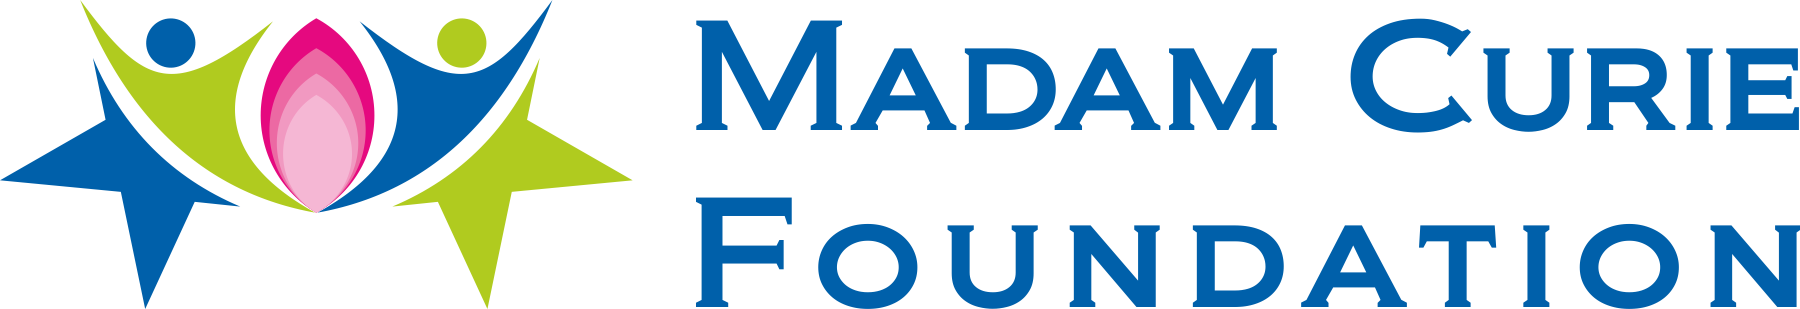 Madam Curie Foundation logo